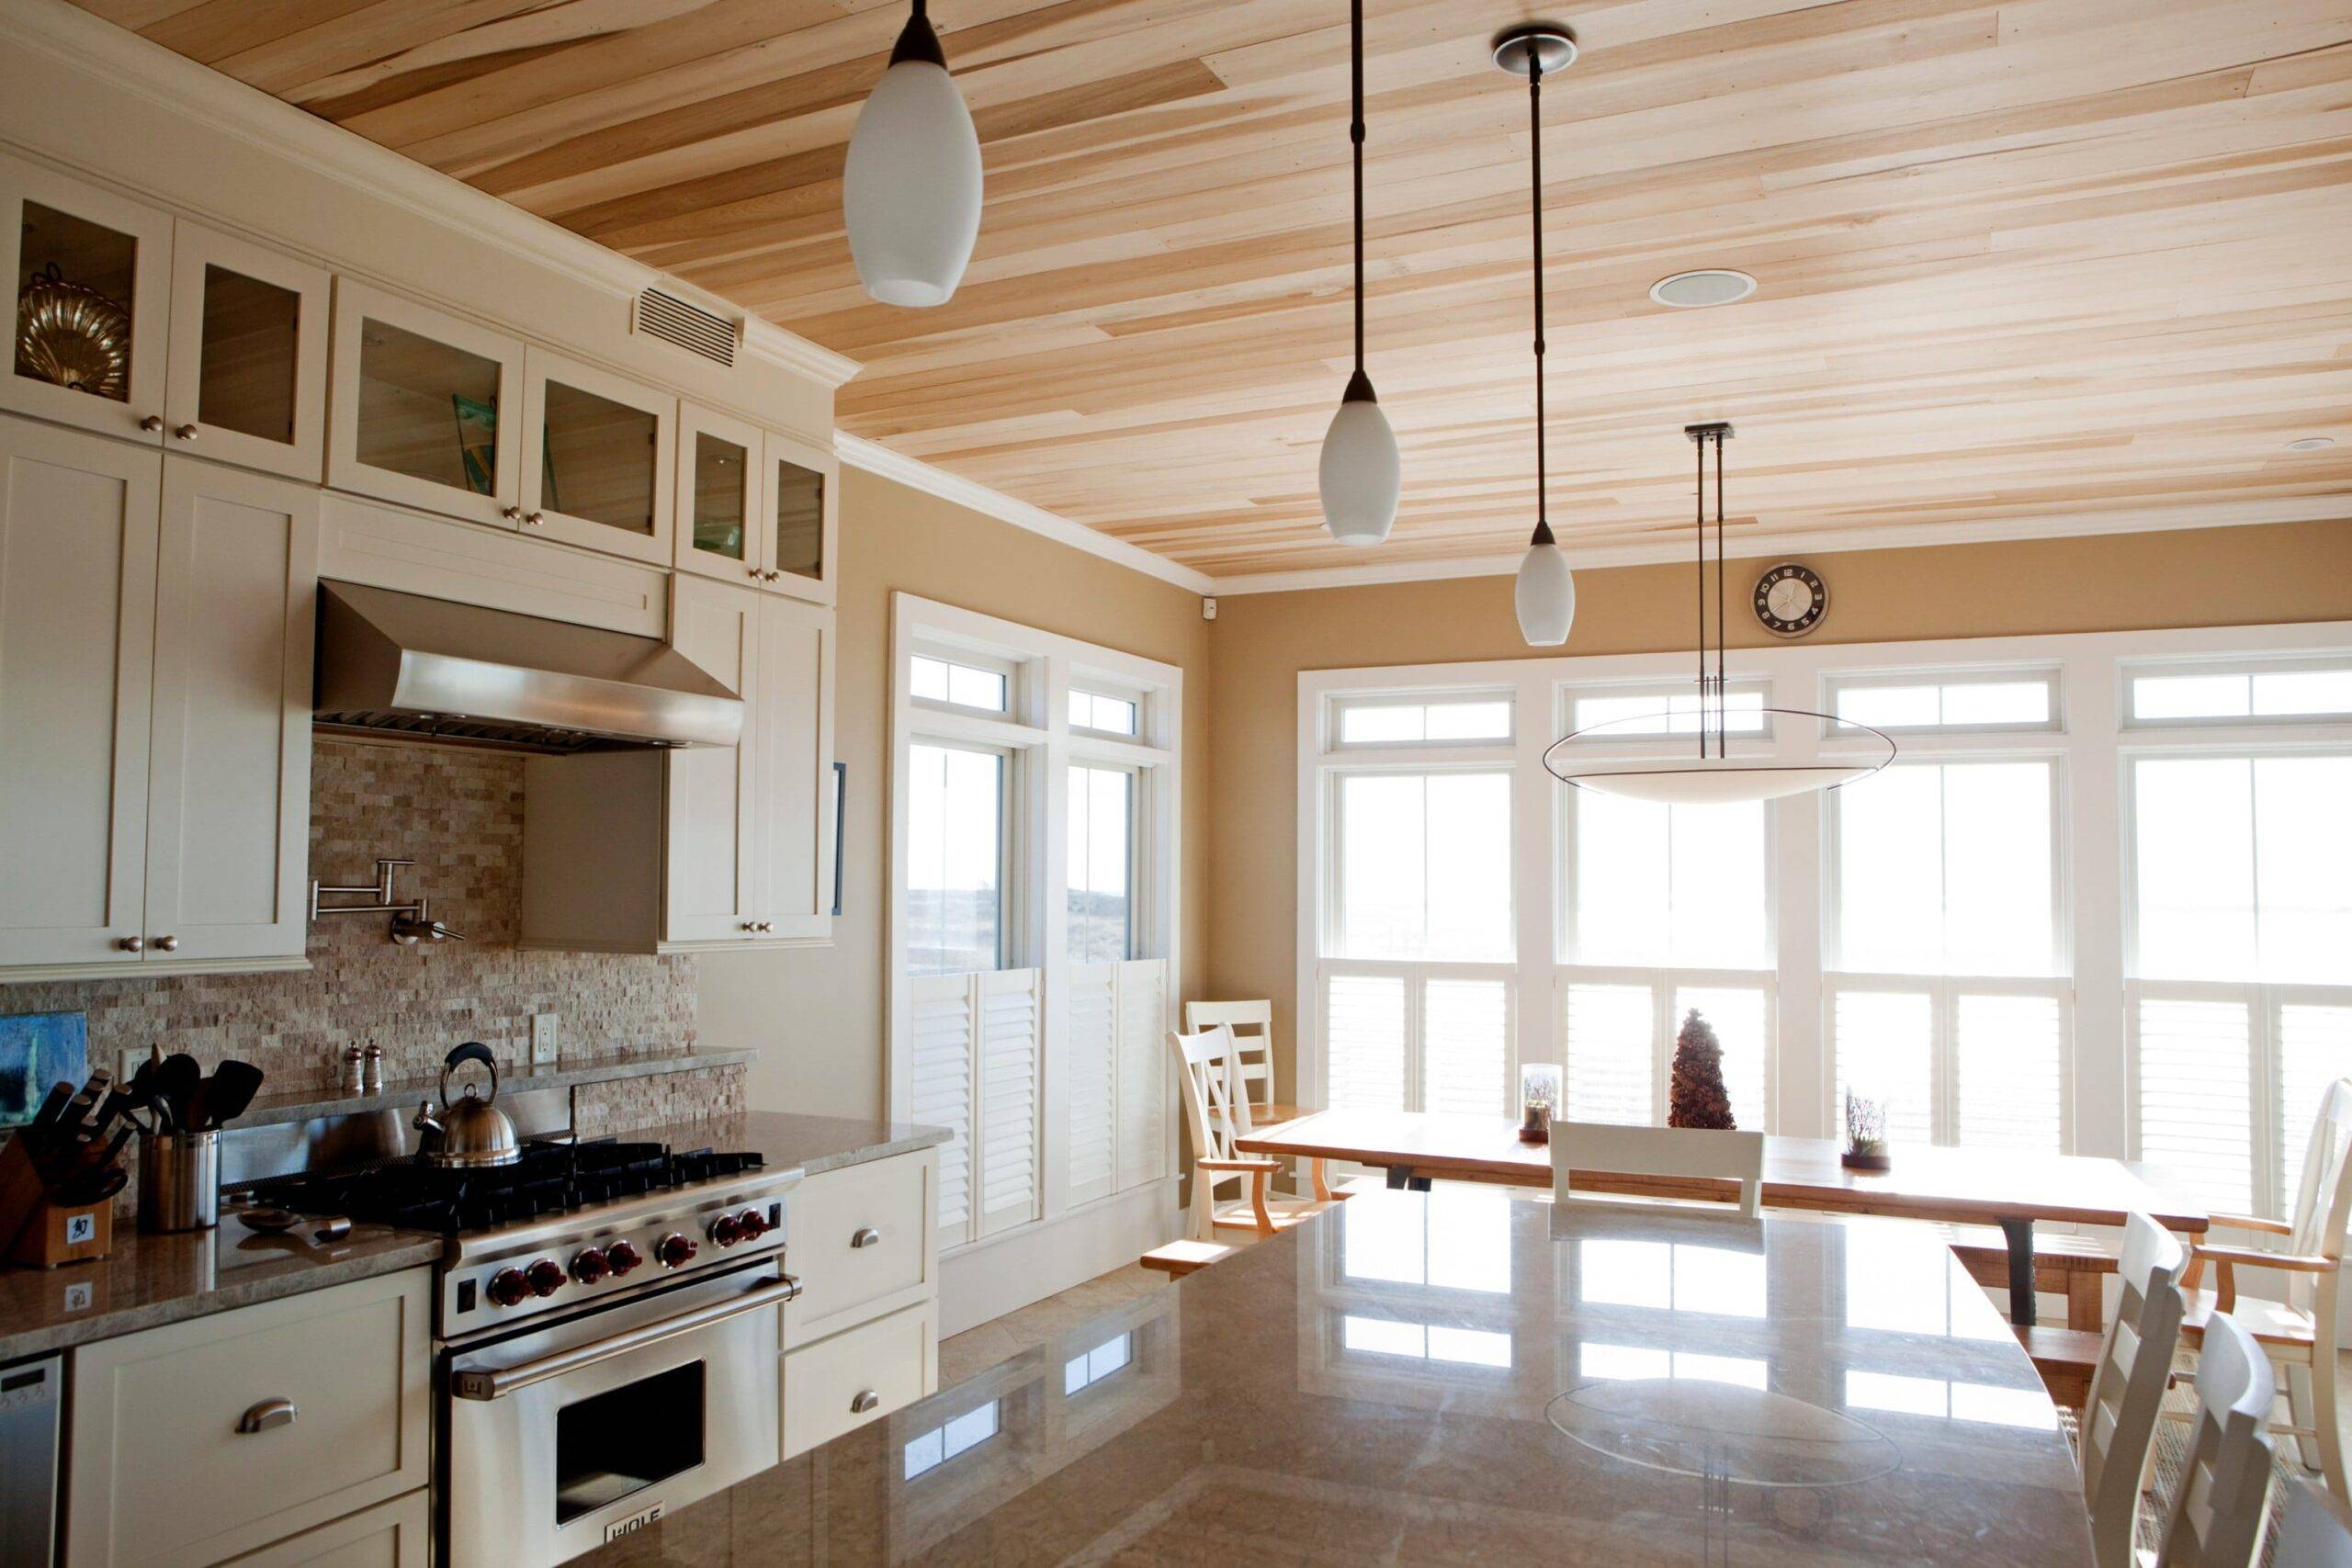 14 материалов для отделки кухонного потолка: каждый найдет своё